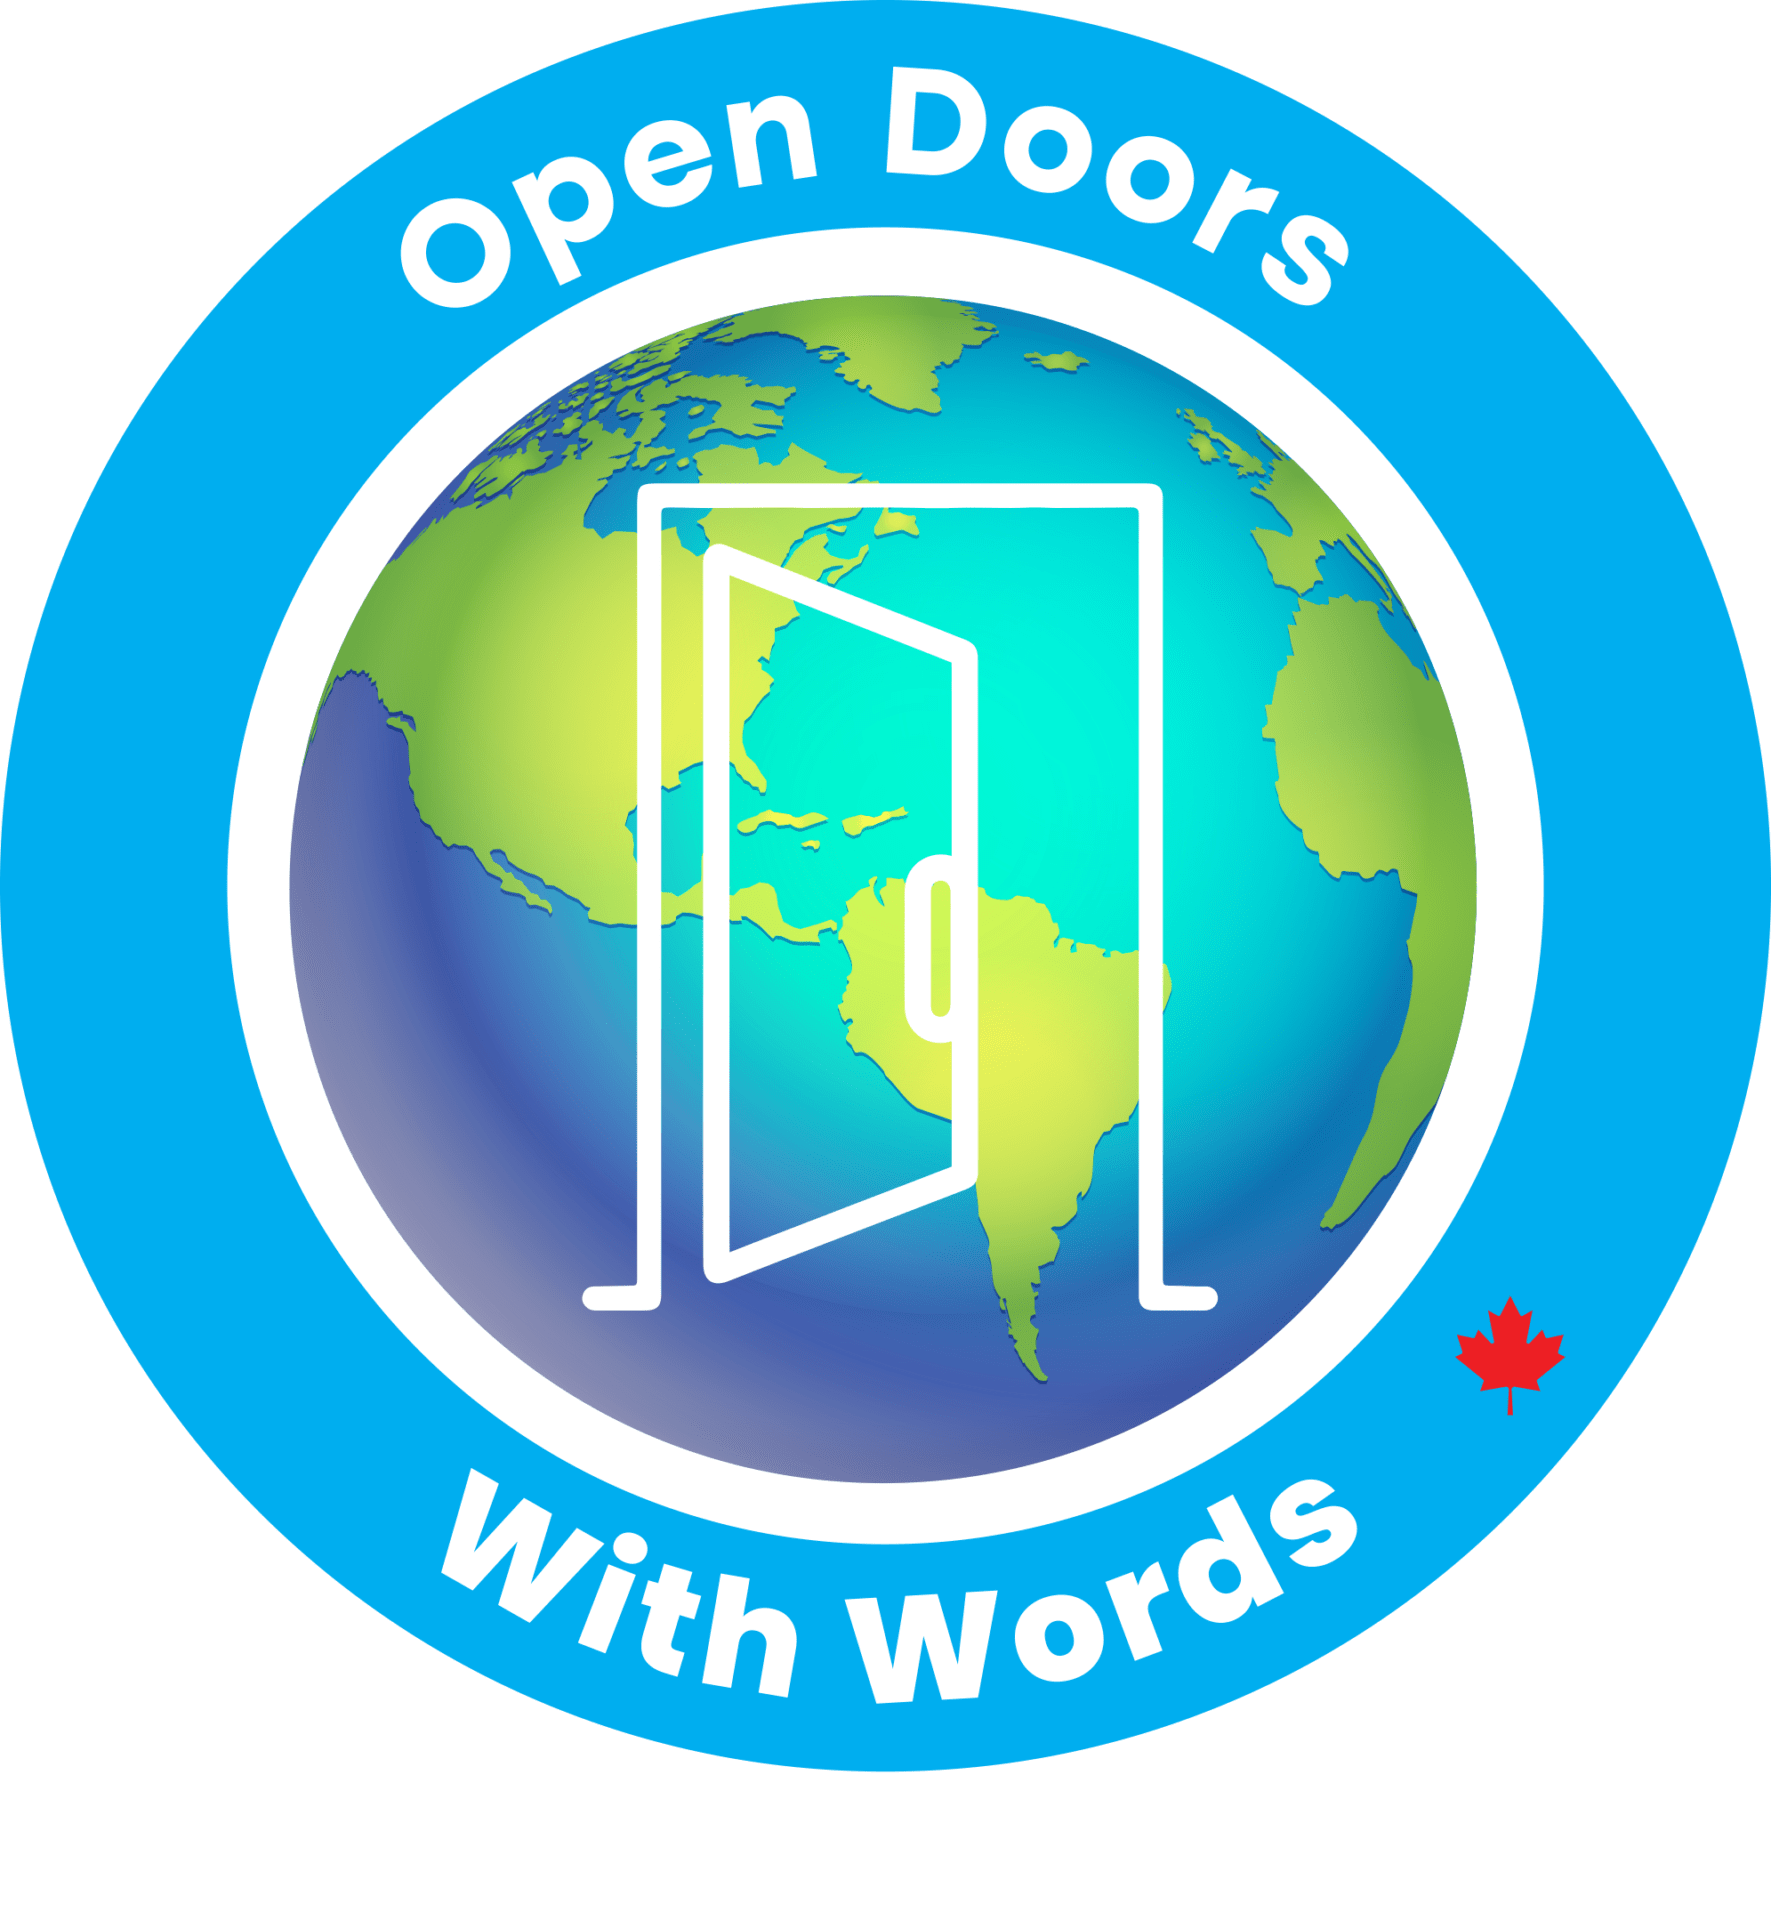 Open Doors With Words logo- copyright